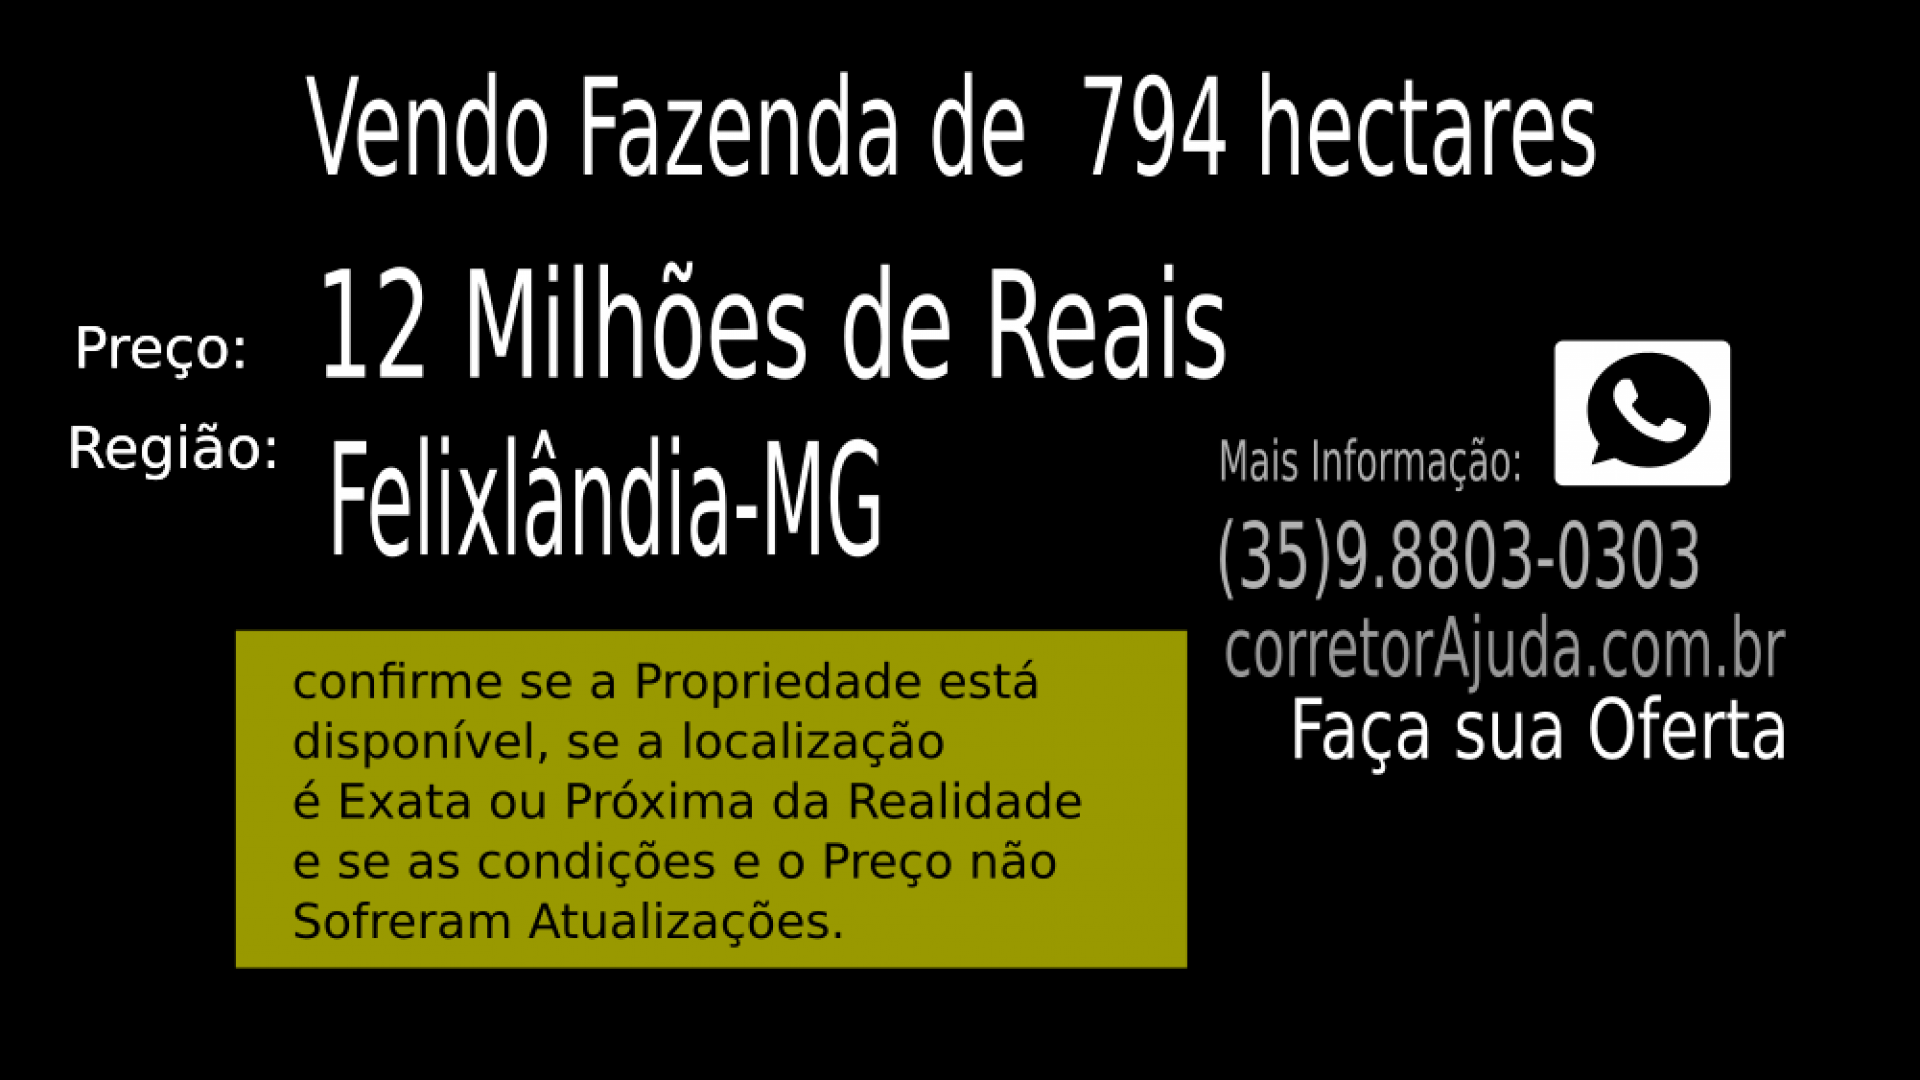 Vendo Fazenda de 794 hectares- Felixlândia-MG 03